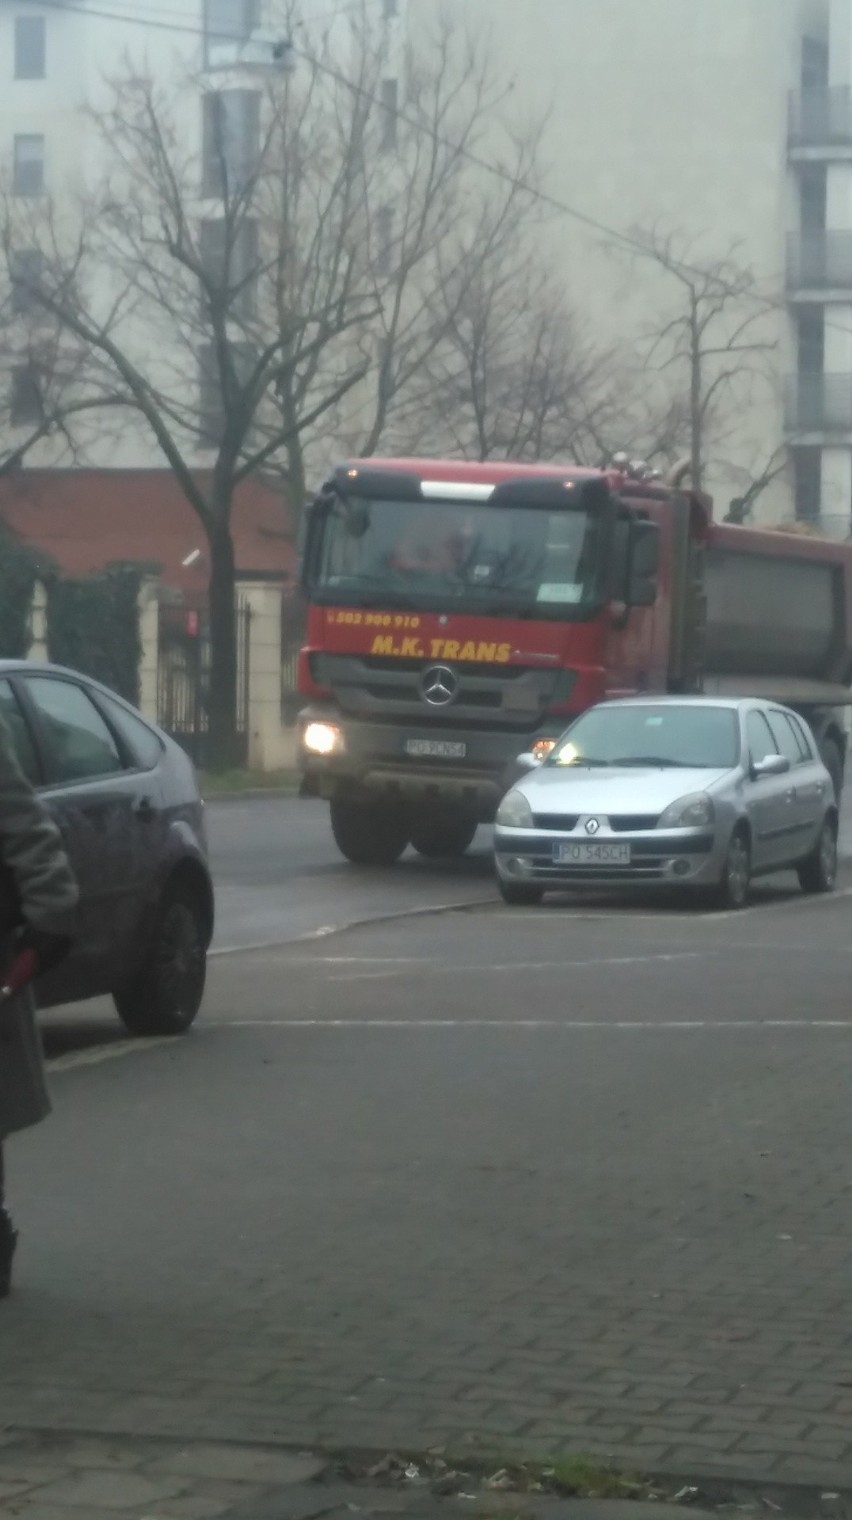 Poznań - miasto nie reagowało na ciężarówki na ul. Mostowej, więc mieszkaniec podał je do sądu 